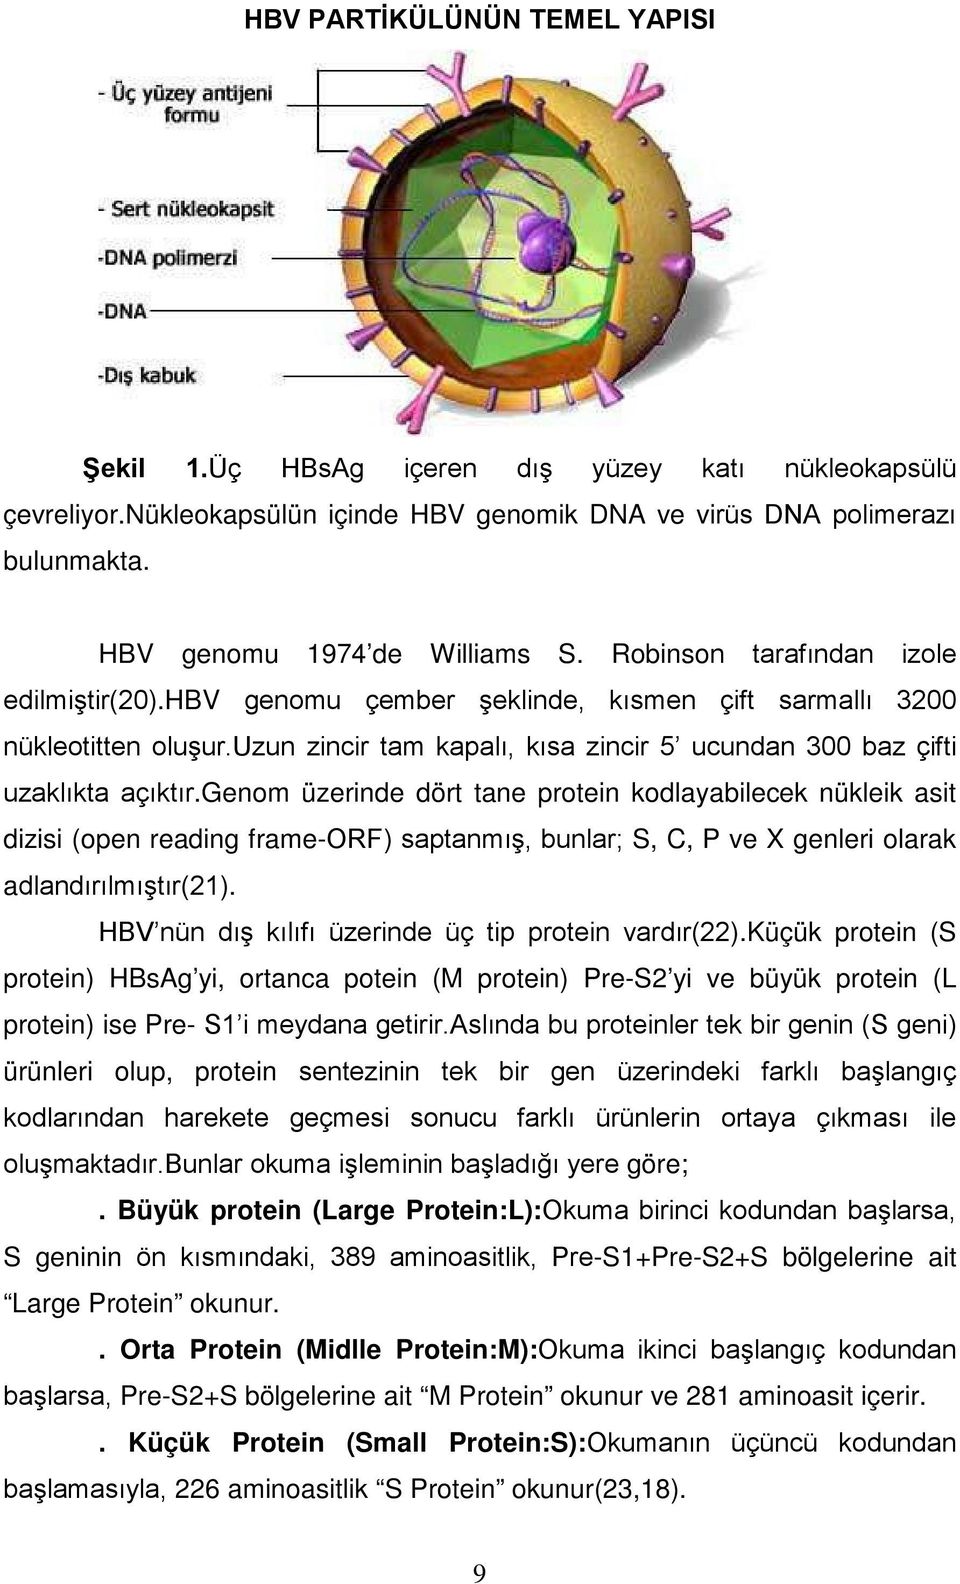 genom üzerinde dört tane protein kodlayabilecek nükleik asit dizisi (open reading frame-orf) saptanmış, bunlar; S, C, P ve X genleri olarak adlandırılmıştır(21).